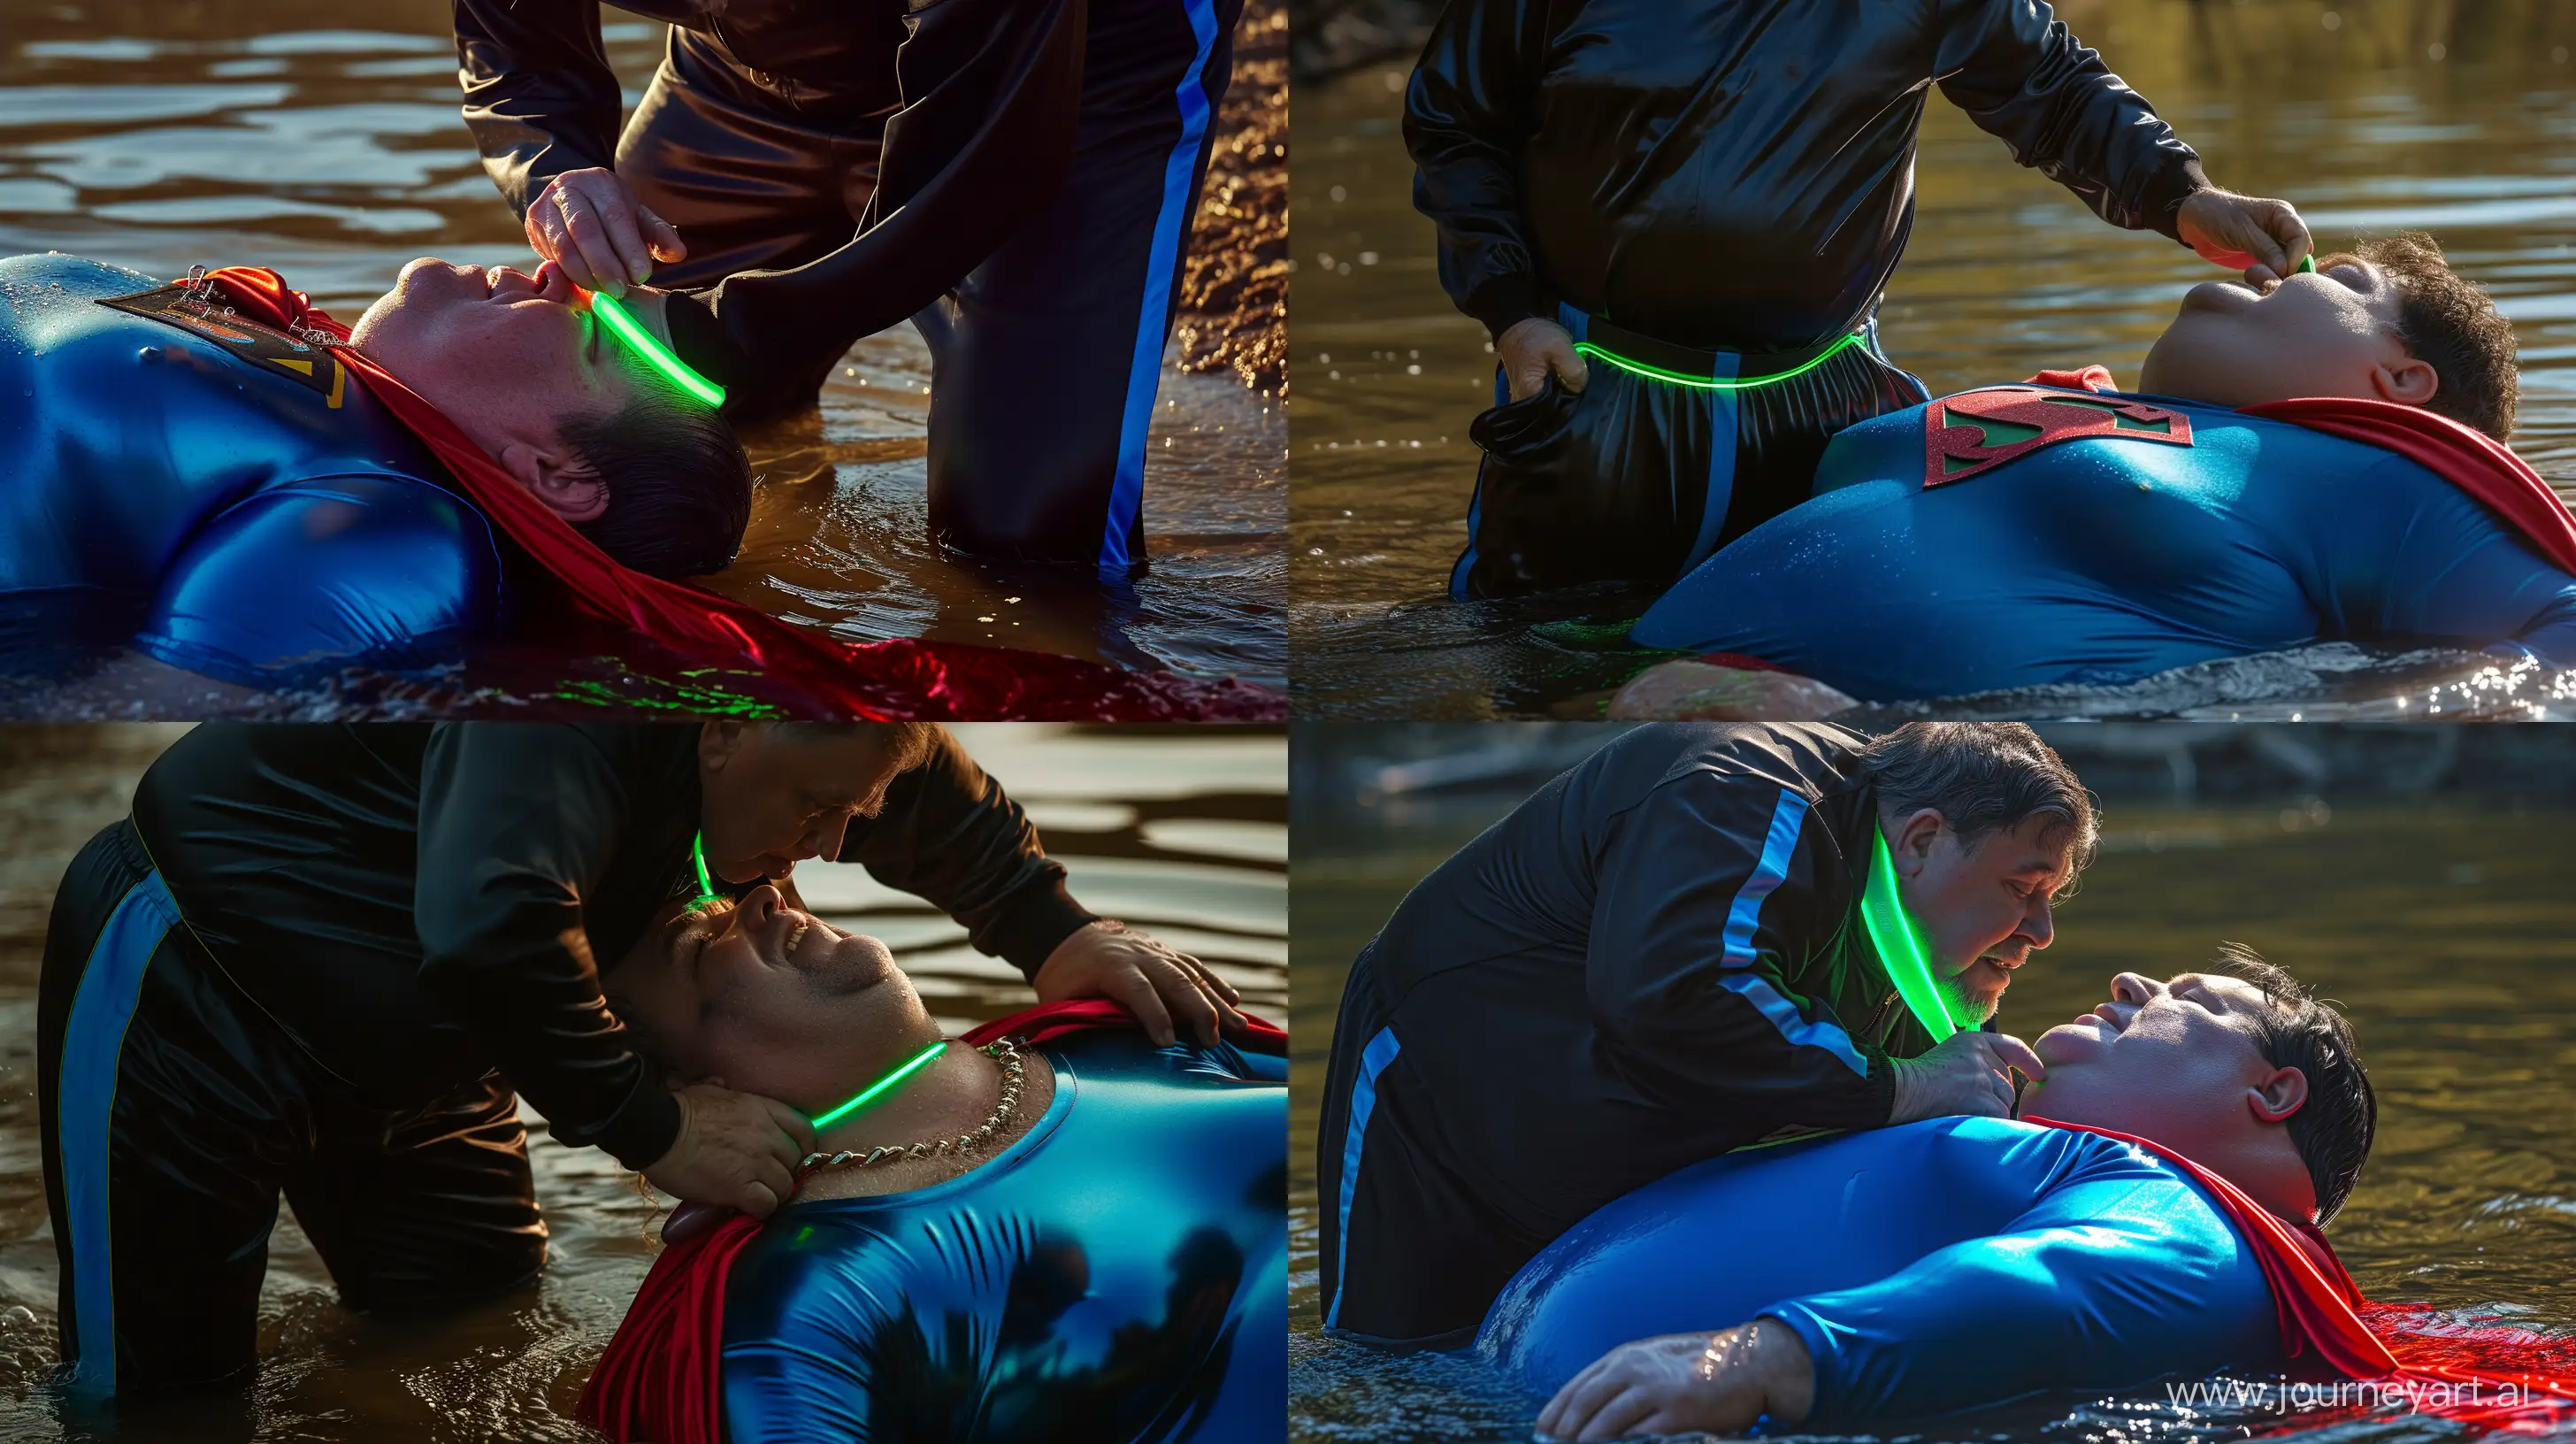 Elderly-Mens-Unusual-River-Collar-Ritual-Captured-in-Neon-Glow